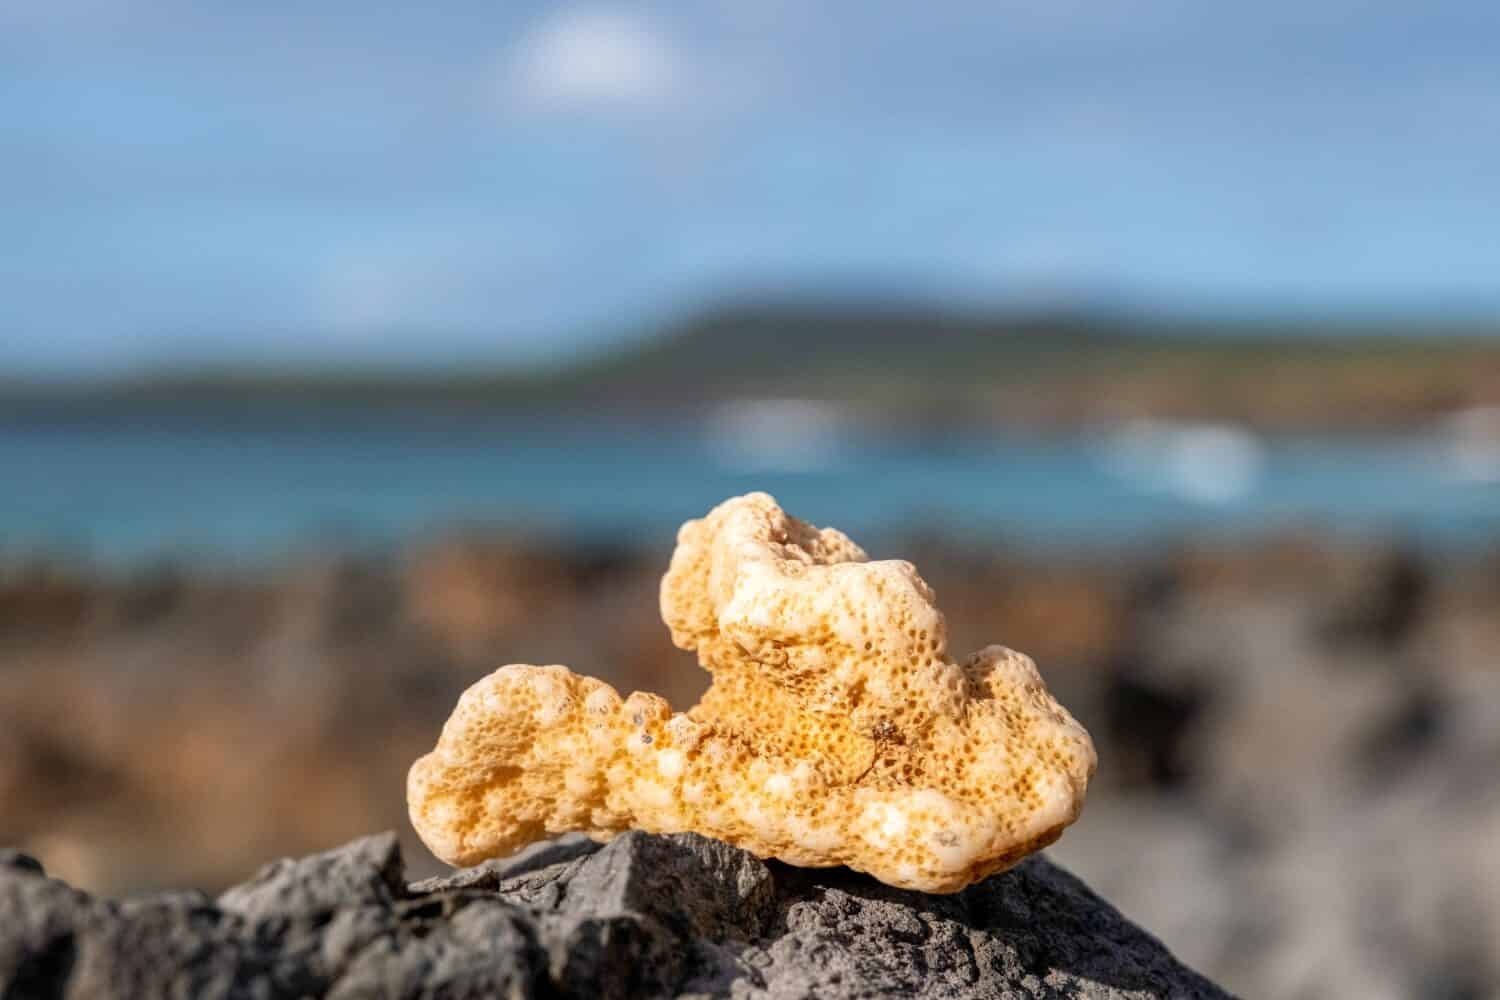 coral piece found on beach